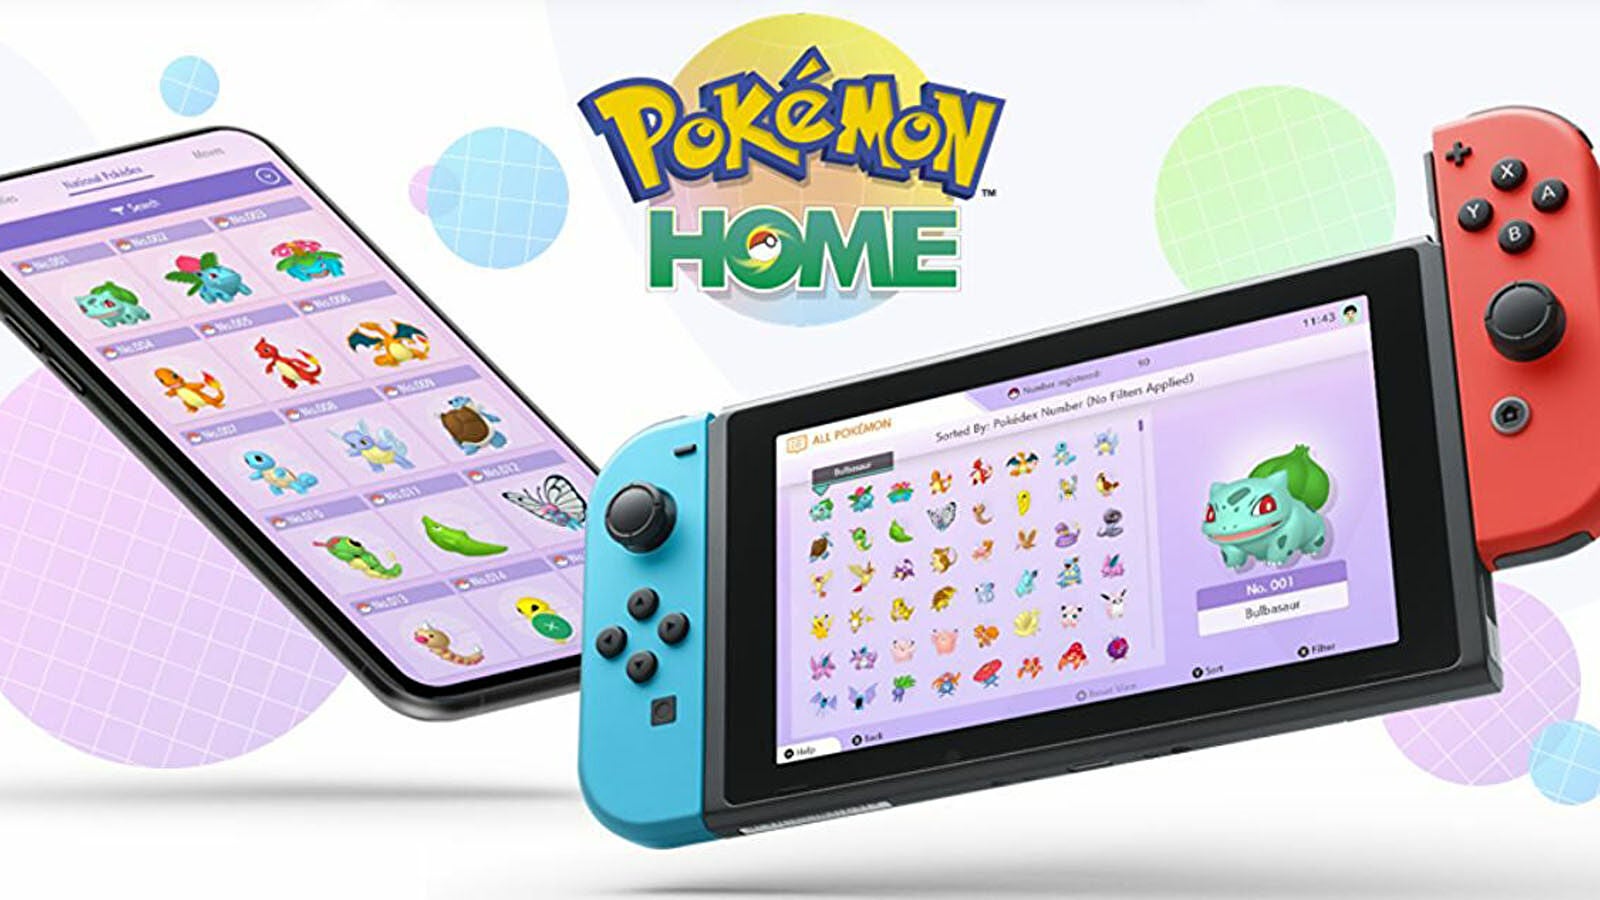 Imagen para Pokémon Home versión 2.0: funcionalidades gratuitas vs de pago y juegos compatibles